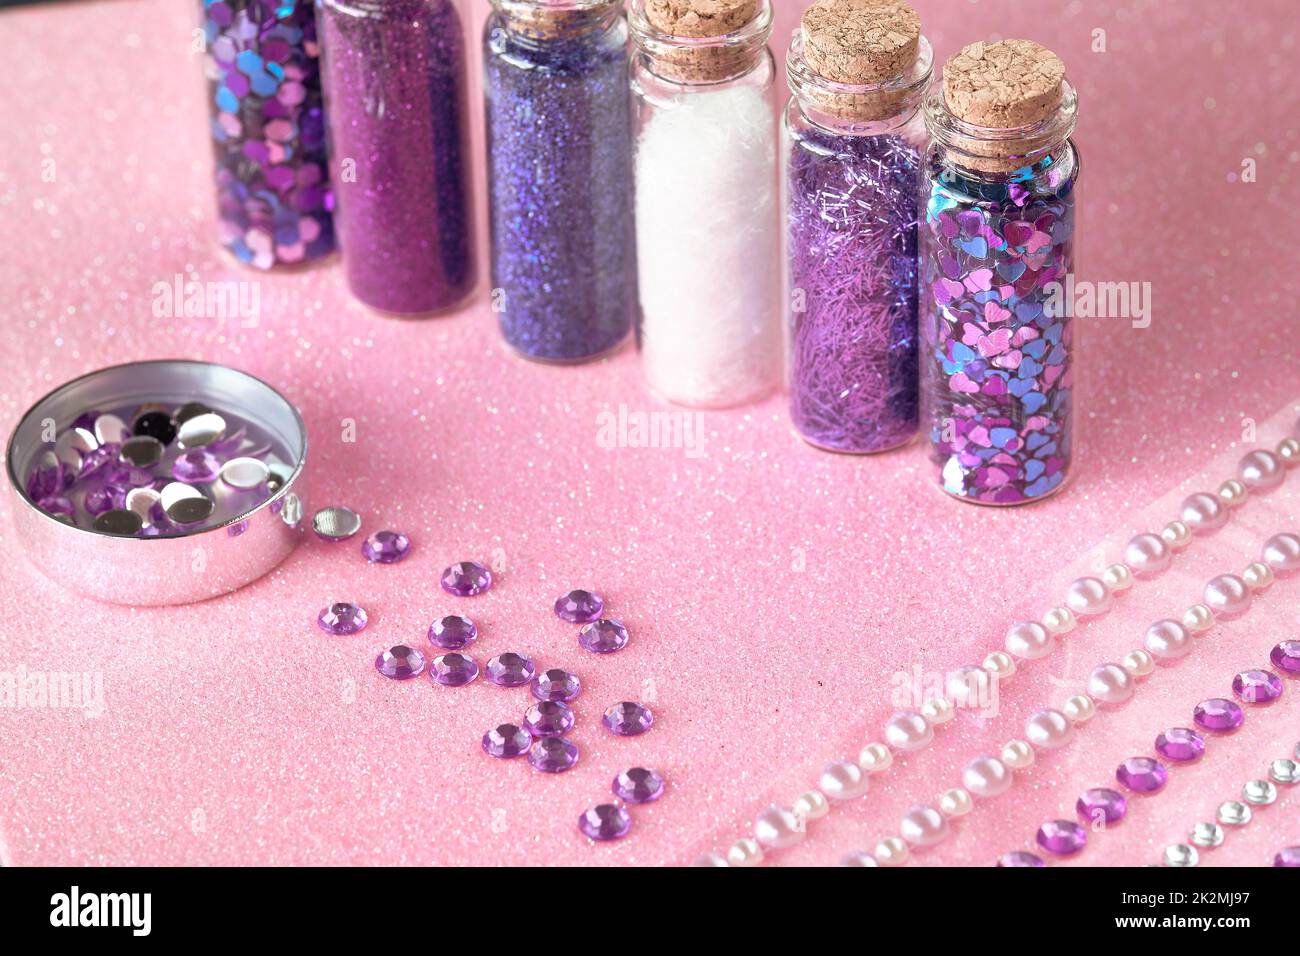 Alle Arten von Glitter-Produkten auf rosa glitzerndem Hintergrund. Nahaufnahme von Fläschchen, Flaschen mit verschiedenen Glitzer-Make-up in Neonpink, Blau und Türkis. Stockfoto